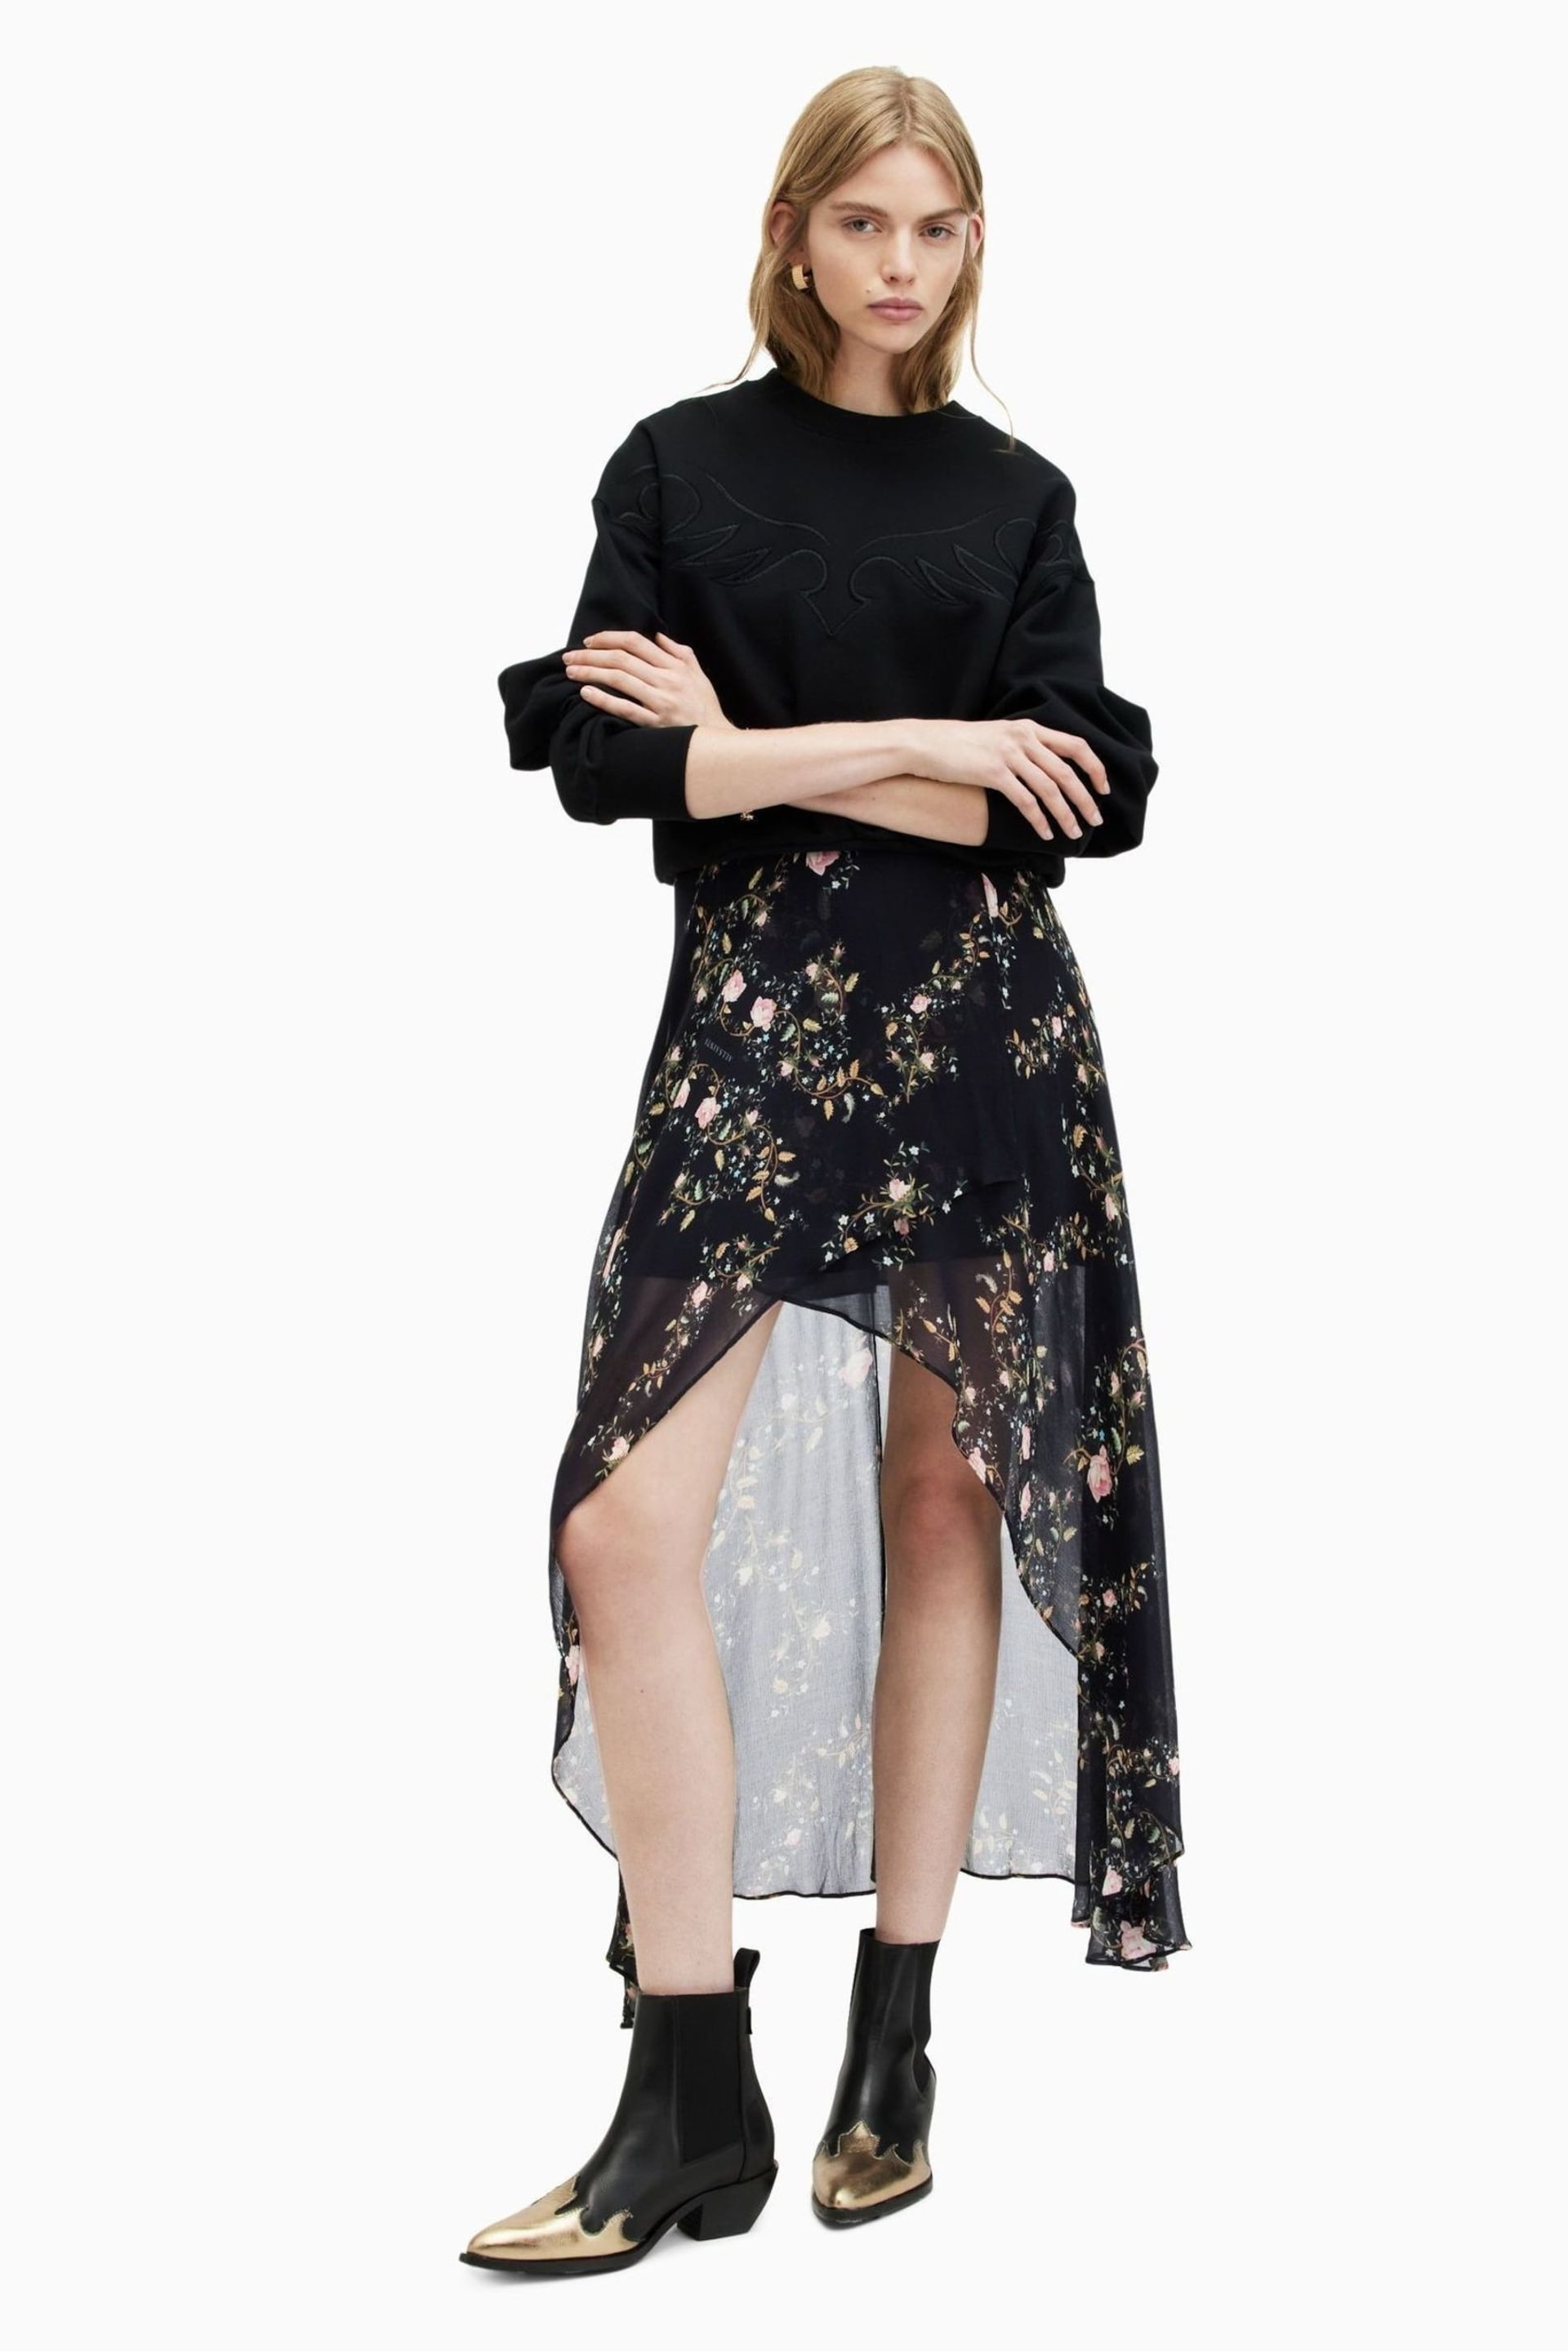 AllSaints Black Slvina Oto Skirt - Image 2 of 6